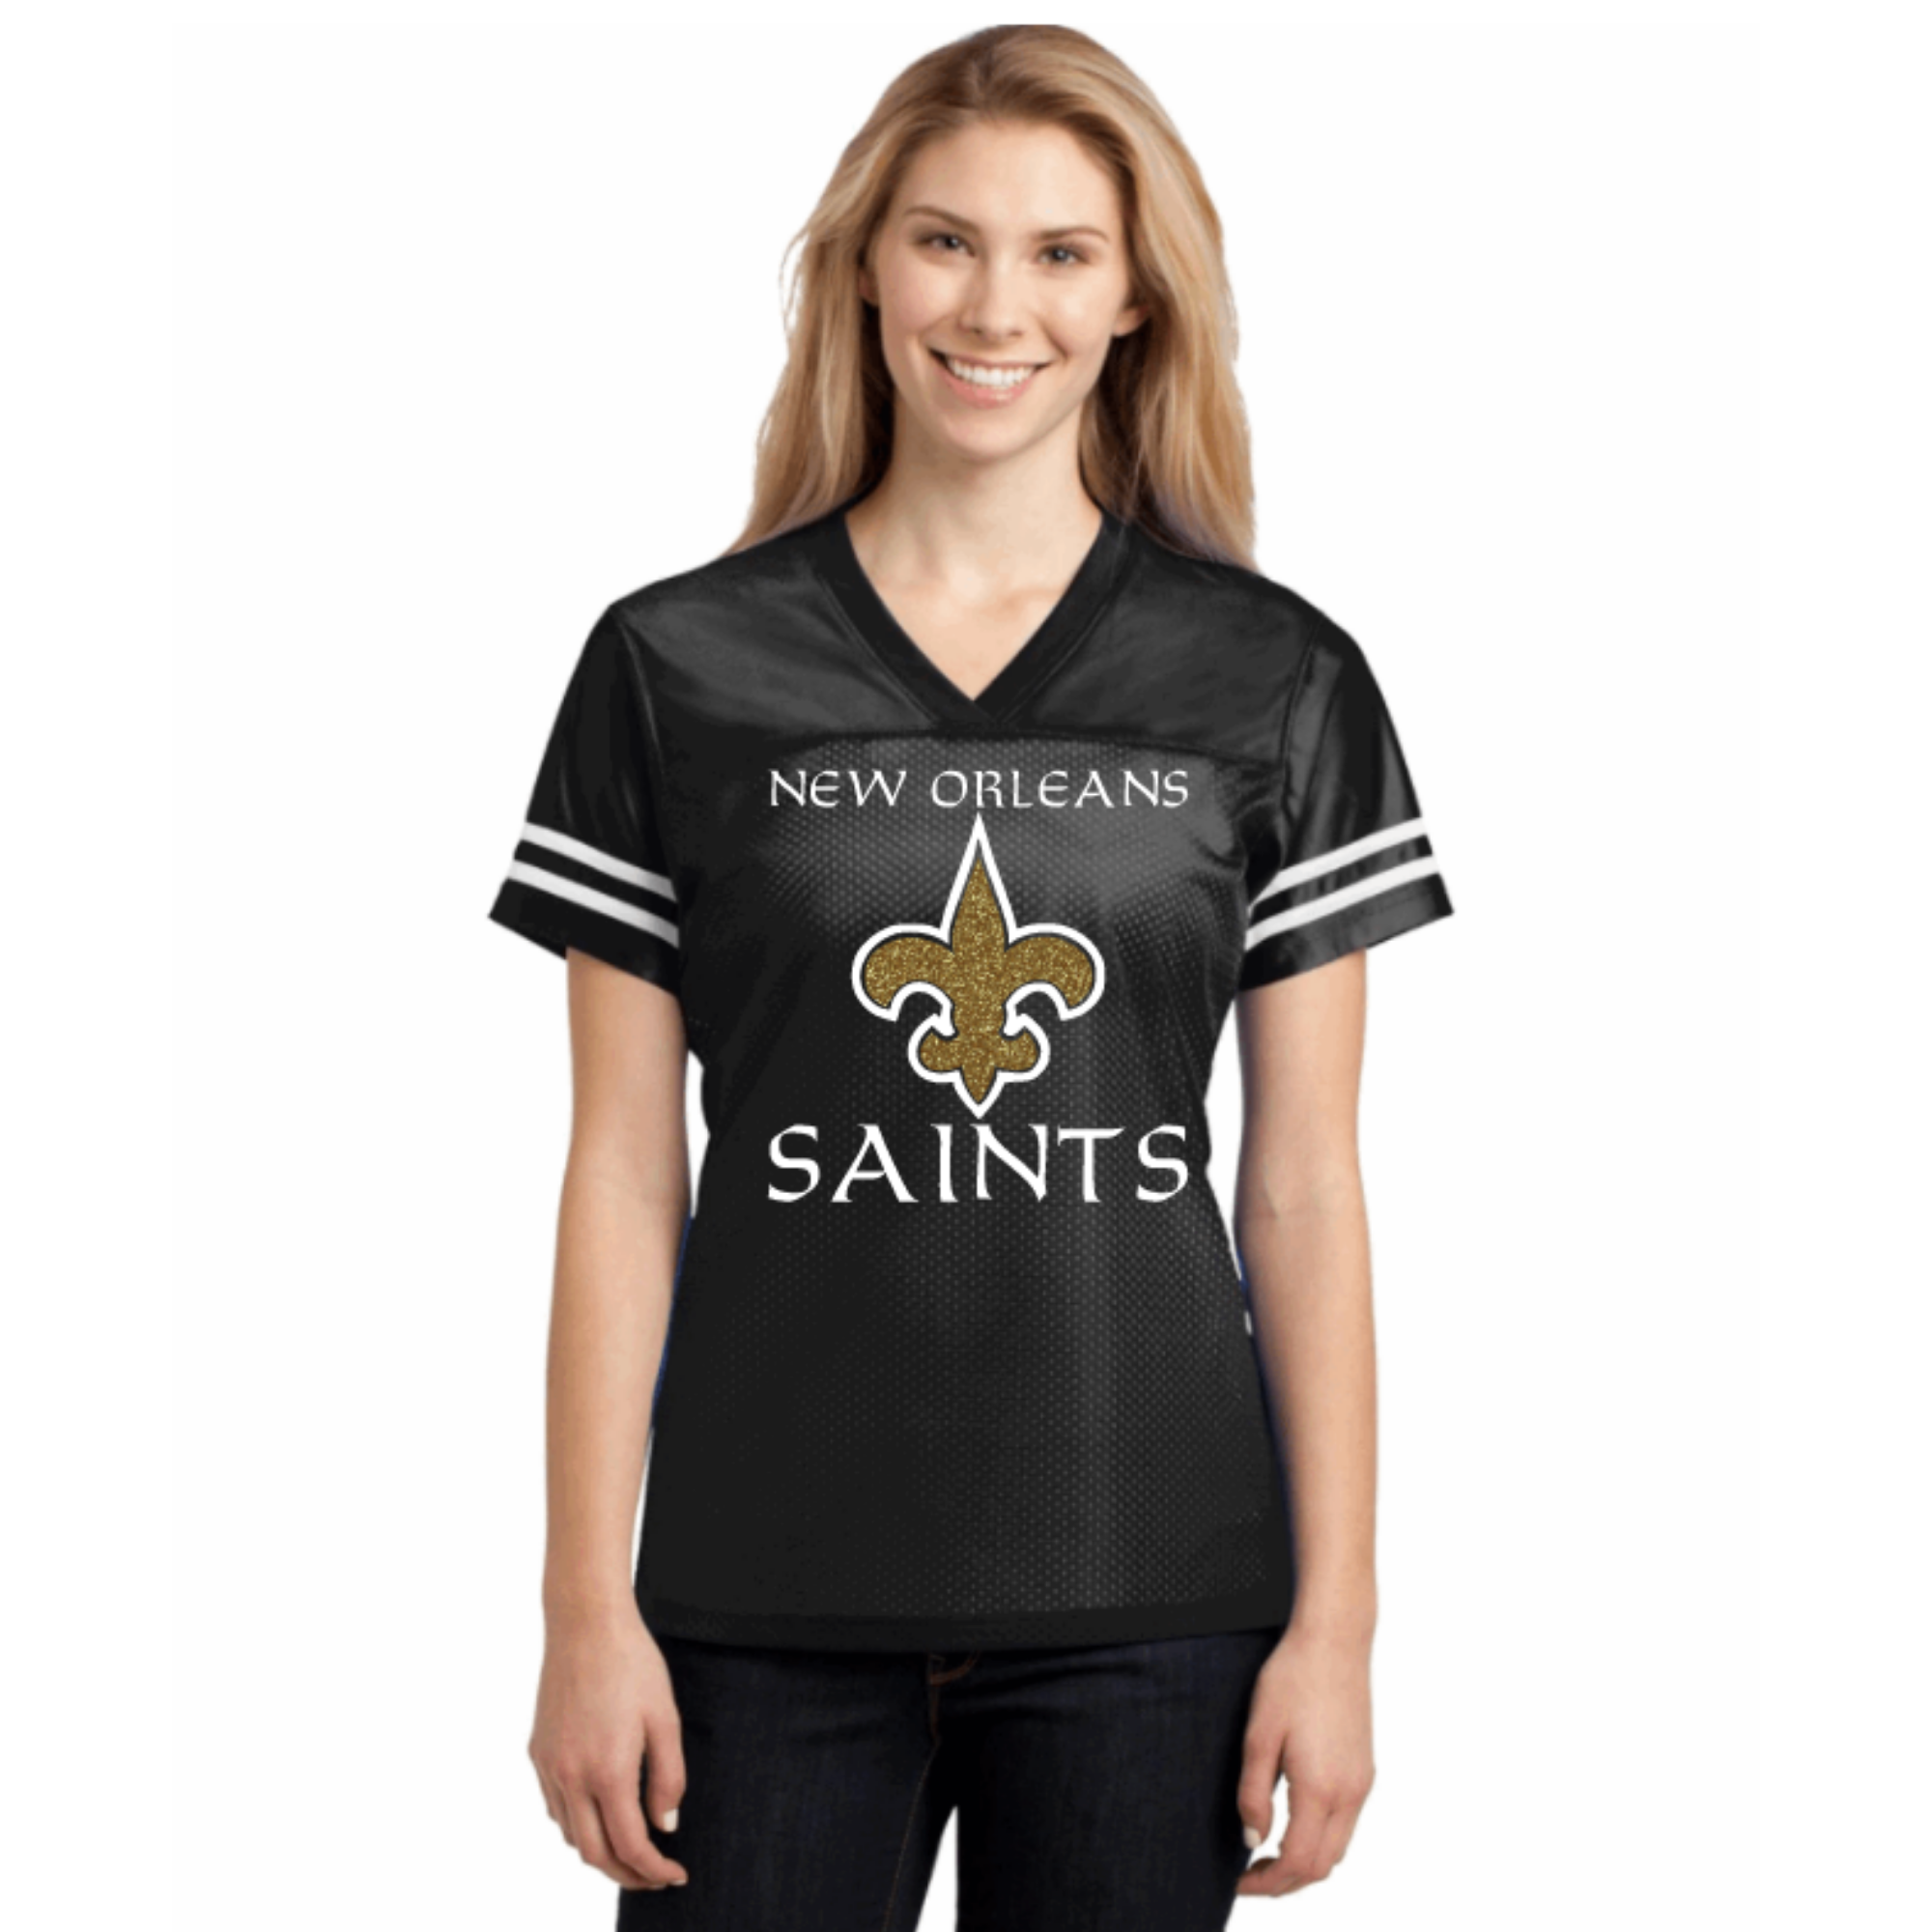 New Orleans Glitter Jersey: NFL Football Fan Gear & Apparel – LuLu Grace